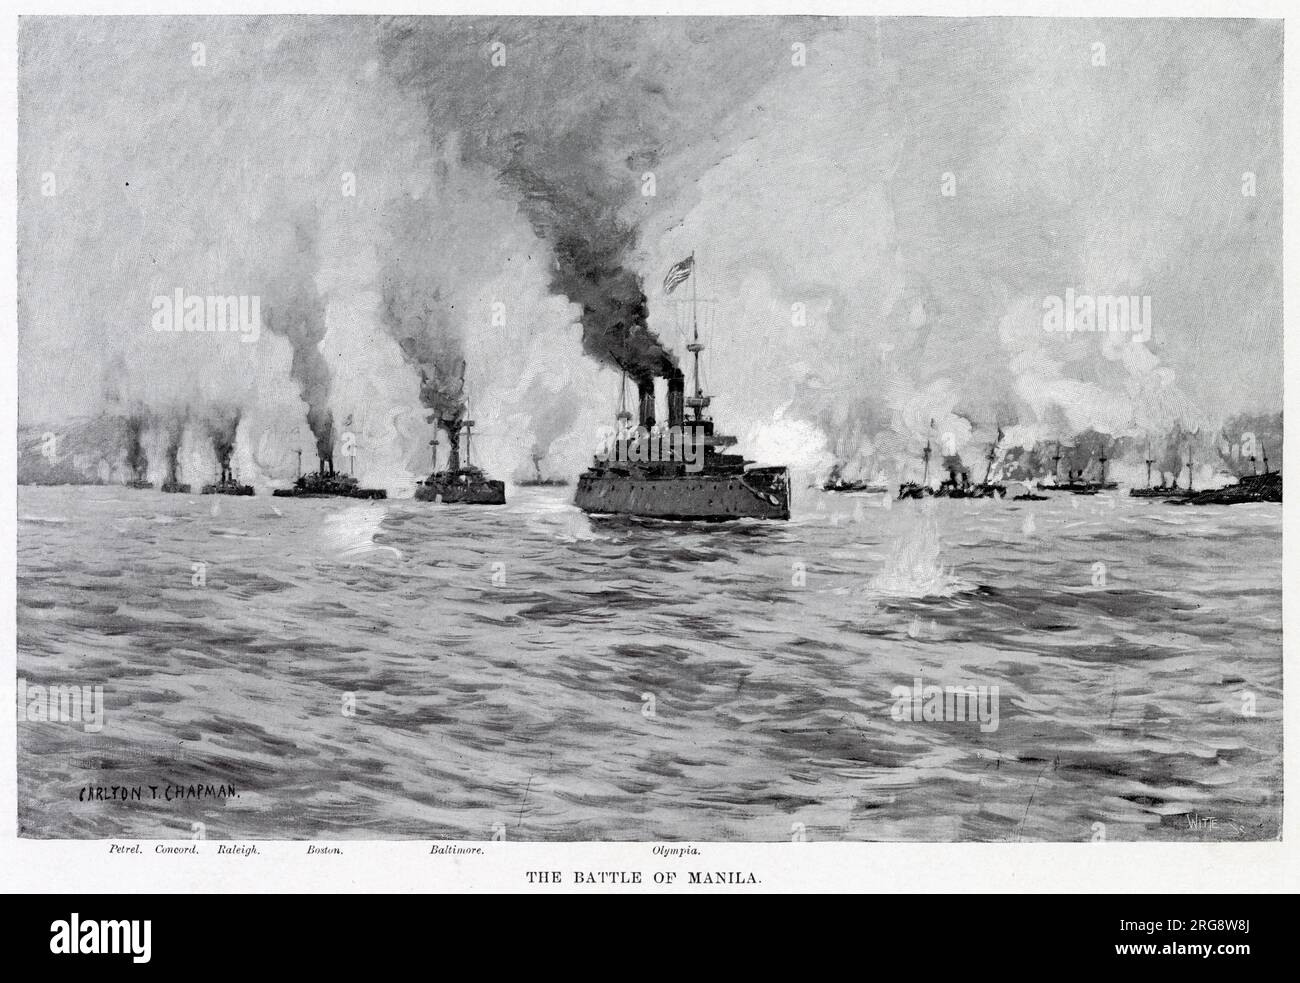 BATTAGLIA NAVALE DI MANILA la flotta americana al comando di Dewey distrugge totalmente la flotta spagnola, senza perdite Foto Stock